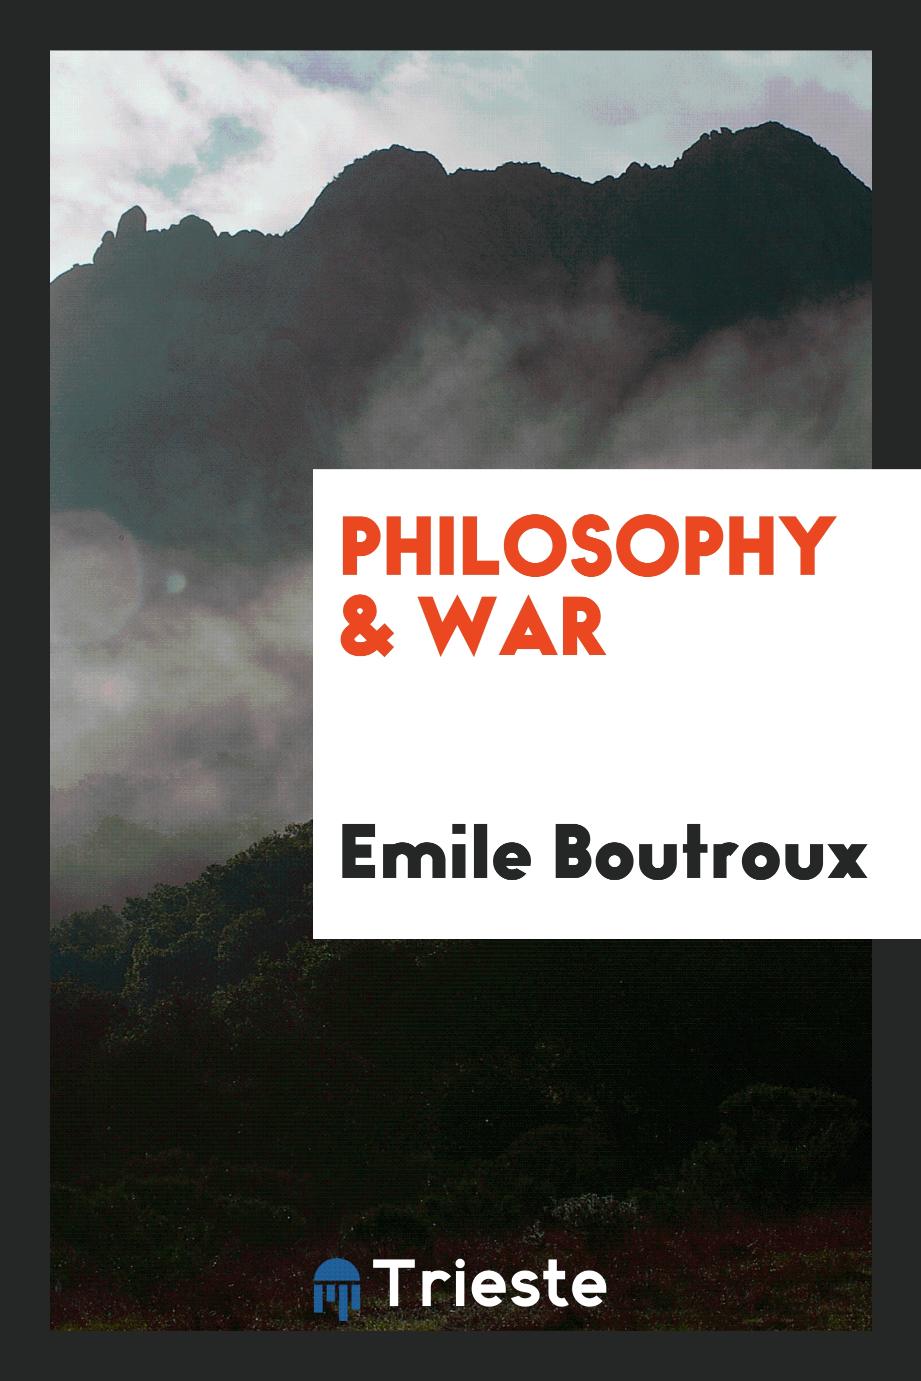 Philosophy & war